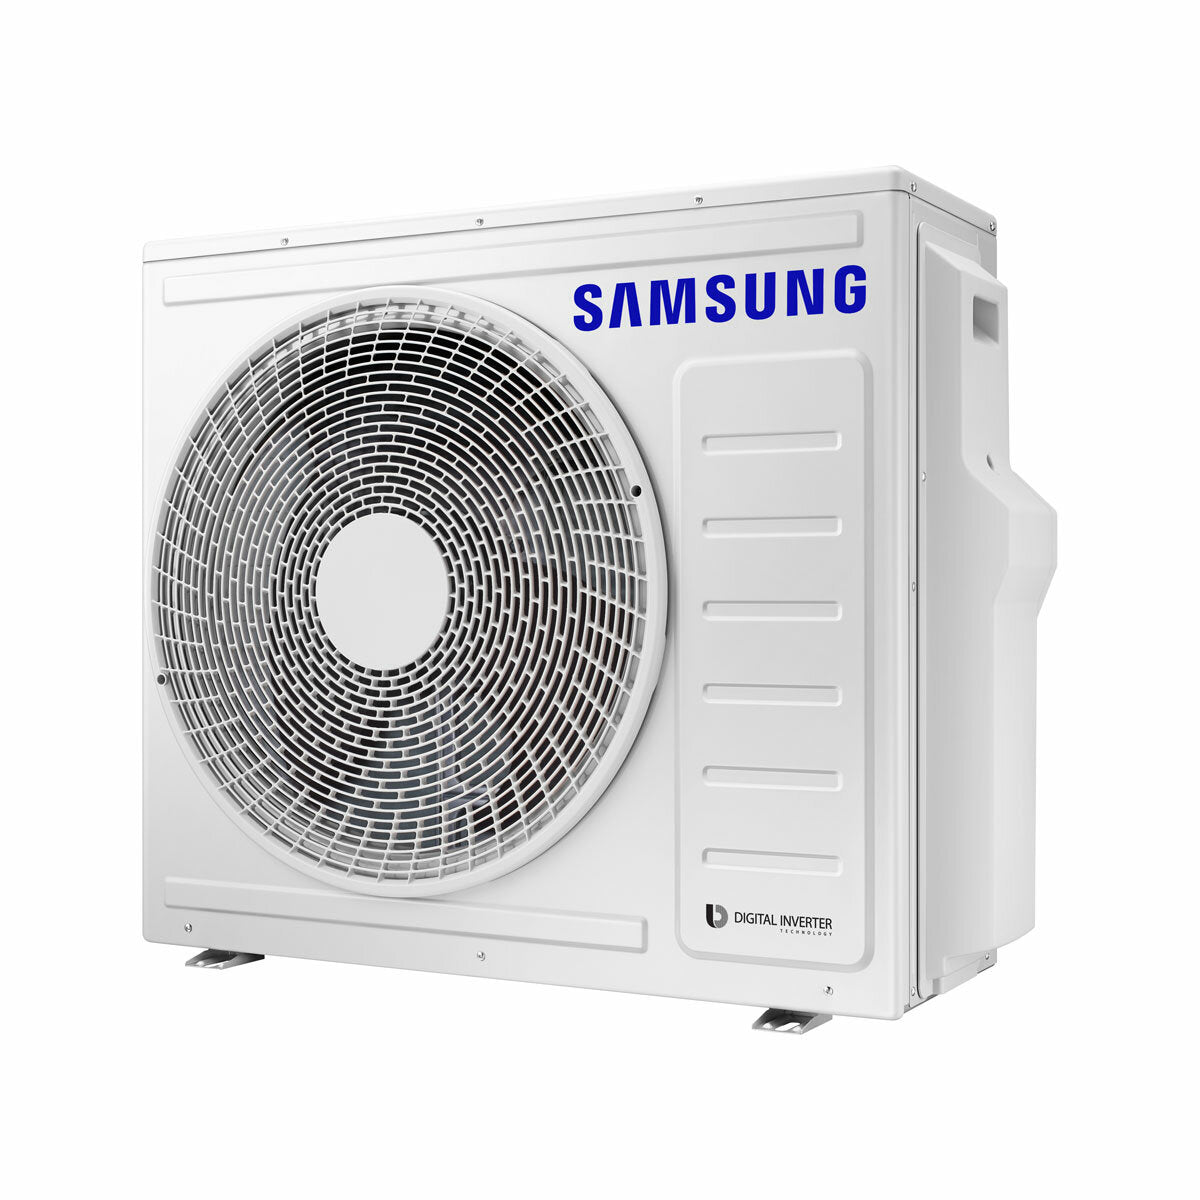 Samsung Climatiseur Windfree 4 voies split carré 7000 + 9000 + 9000 + 9000 BTU inverter A++ unité extérieure 8,0 kW